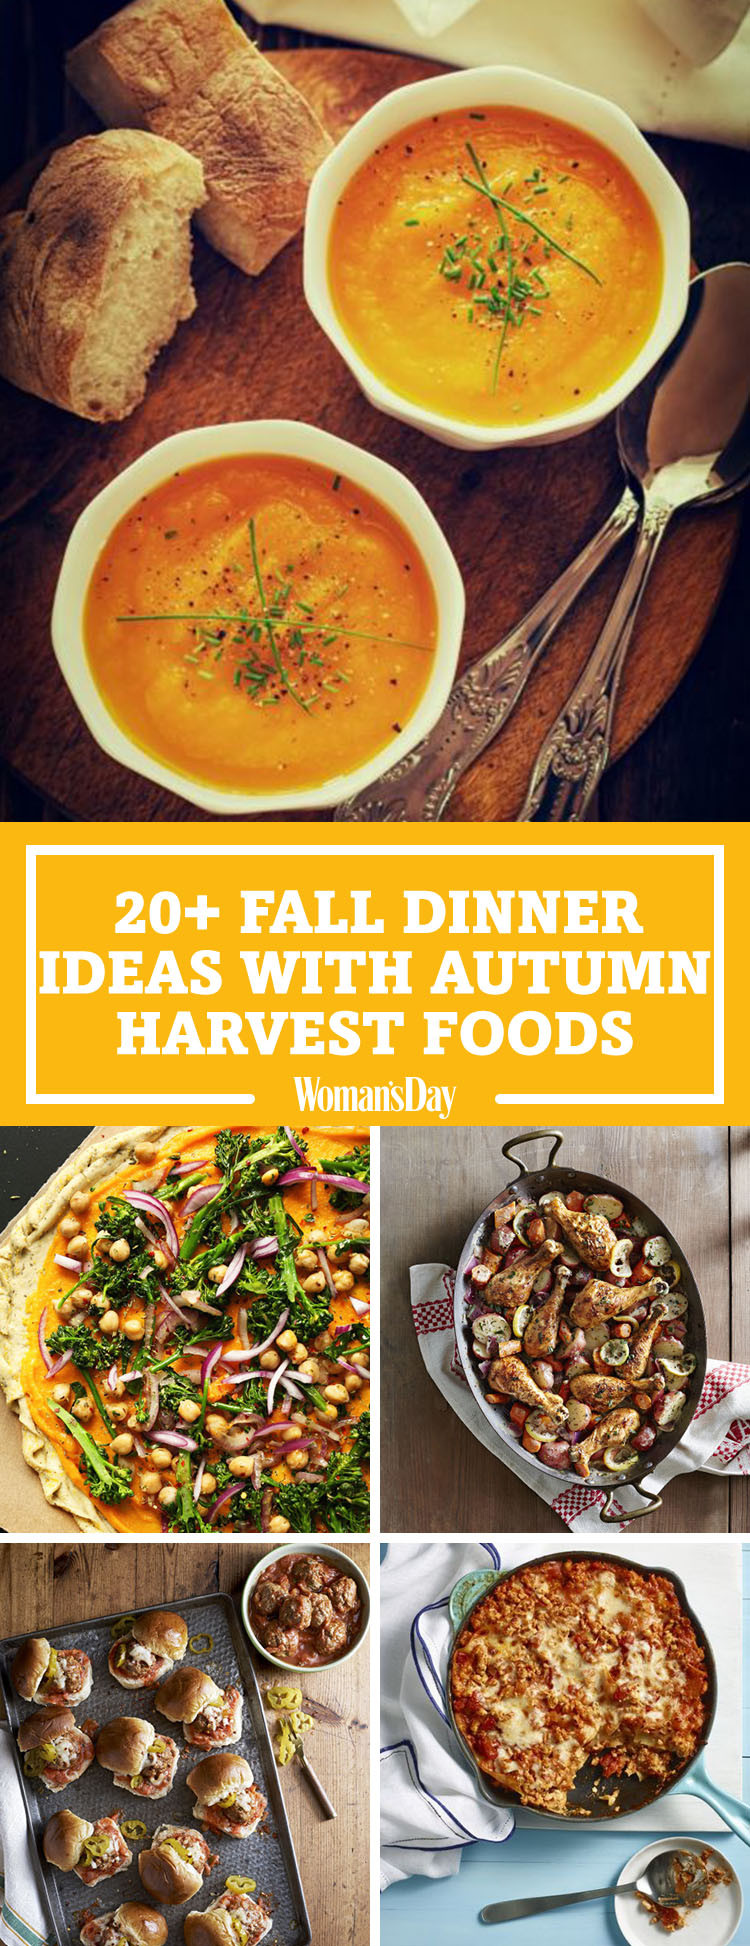 Easy Fall Dinner Recipe
 26 Easy Fall Dinner Ideas Best Dinner Recipes for Autumn